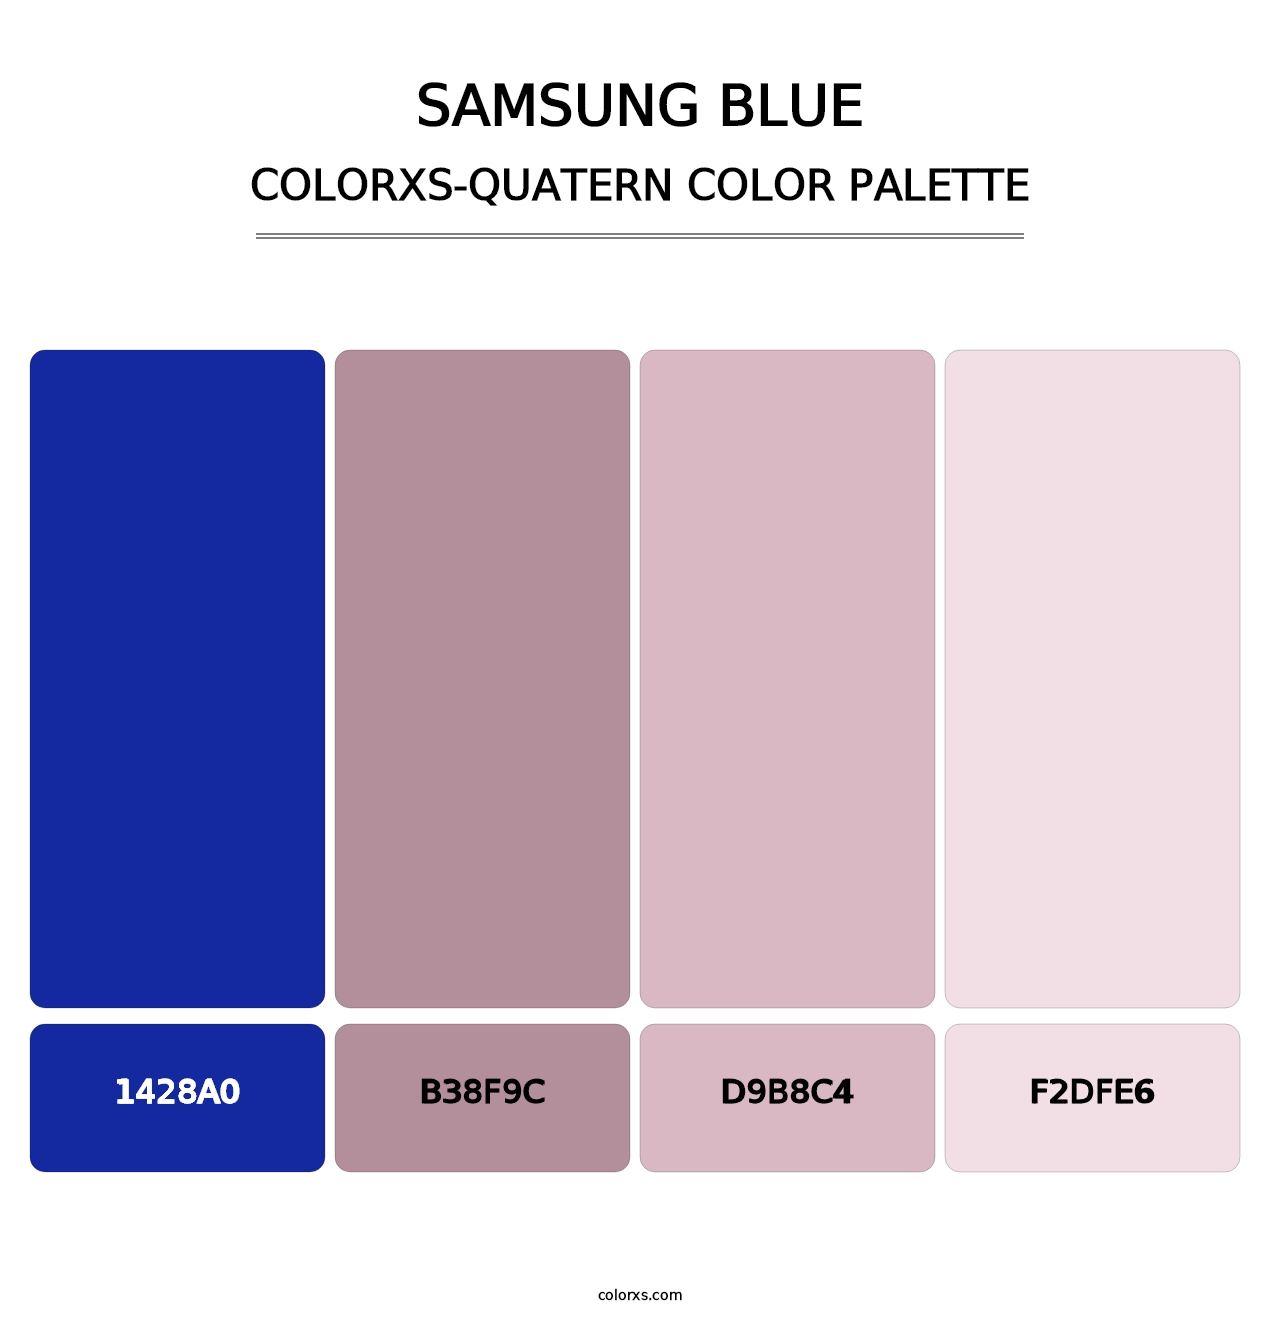 Samsung Blue - Colorxs Quatern Palette